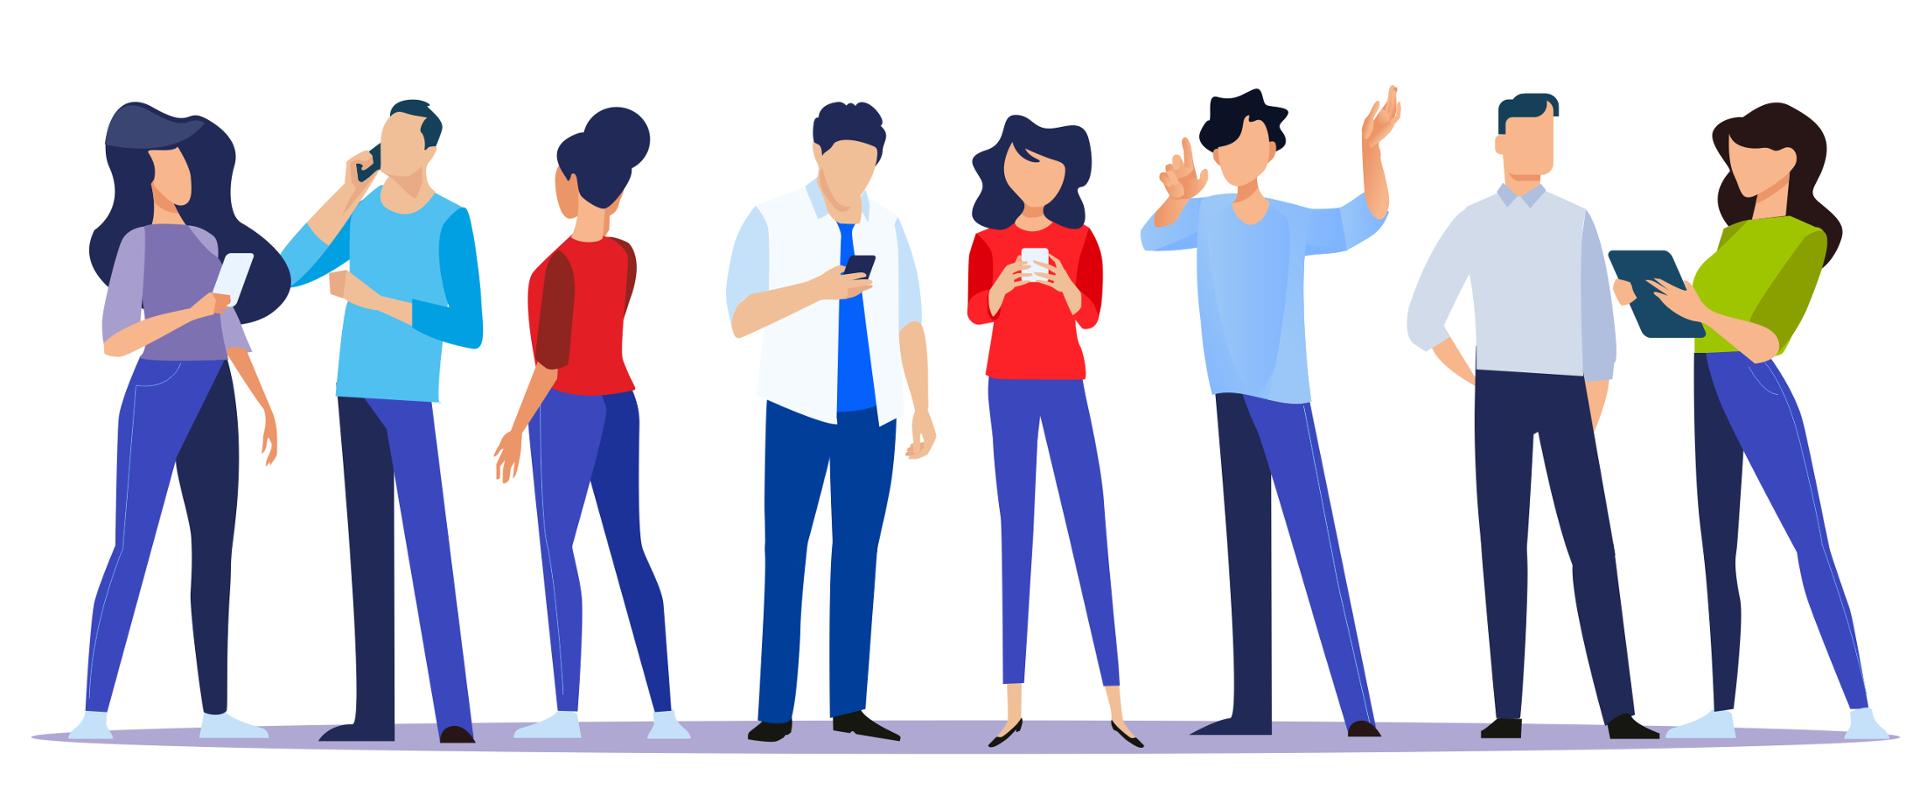 Grafika wektorowa - osiem osób (czterech mężczyzn, cztery kobiety) - wszyscy stoją, w różnych pozach, każdy z nich korzysta z telefonu komórkowego lub tableta.